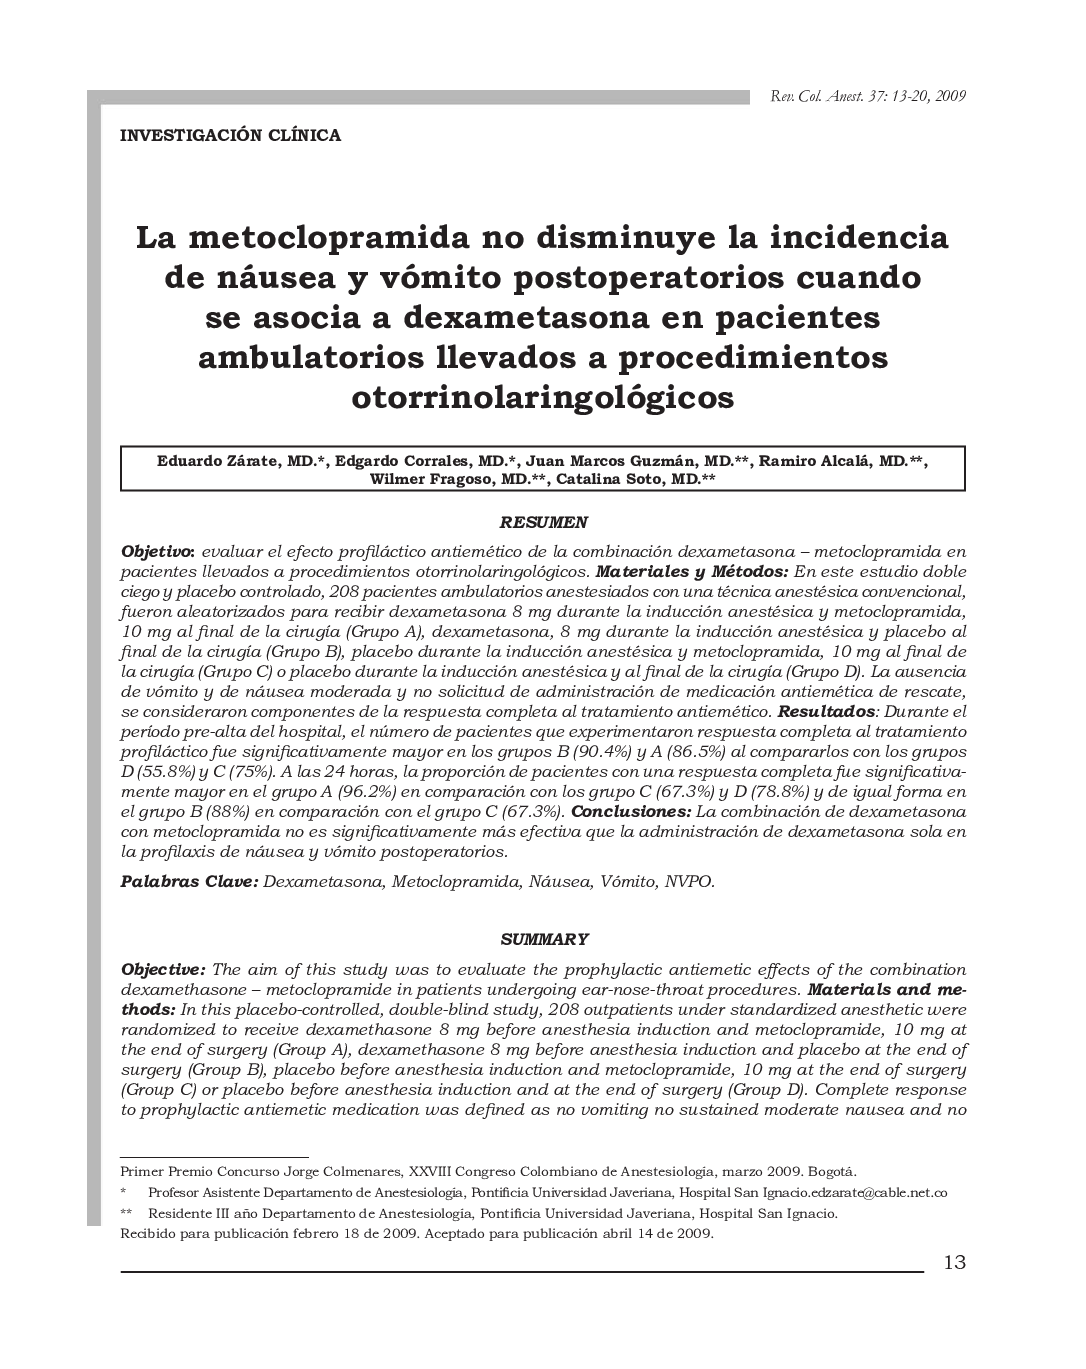 La metoclopramida no disminuye la incidencia de náusea vómito postoperatorios cuando se asocia a dexametasona en pacientes ambulatorios llevados a procedimientos otorrinolaringológicos 